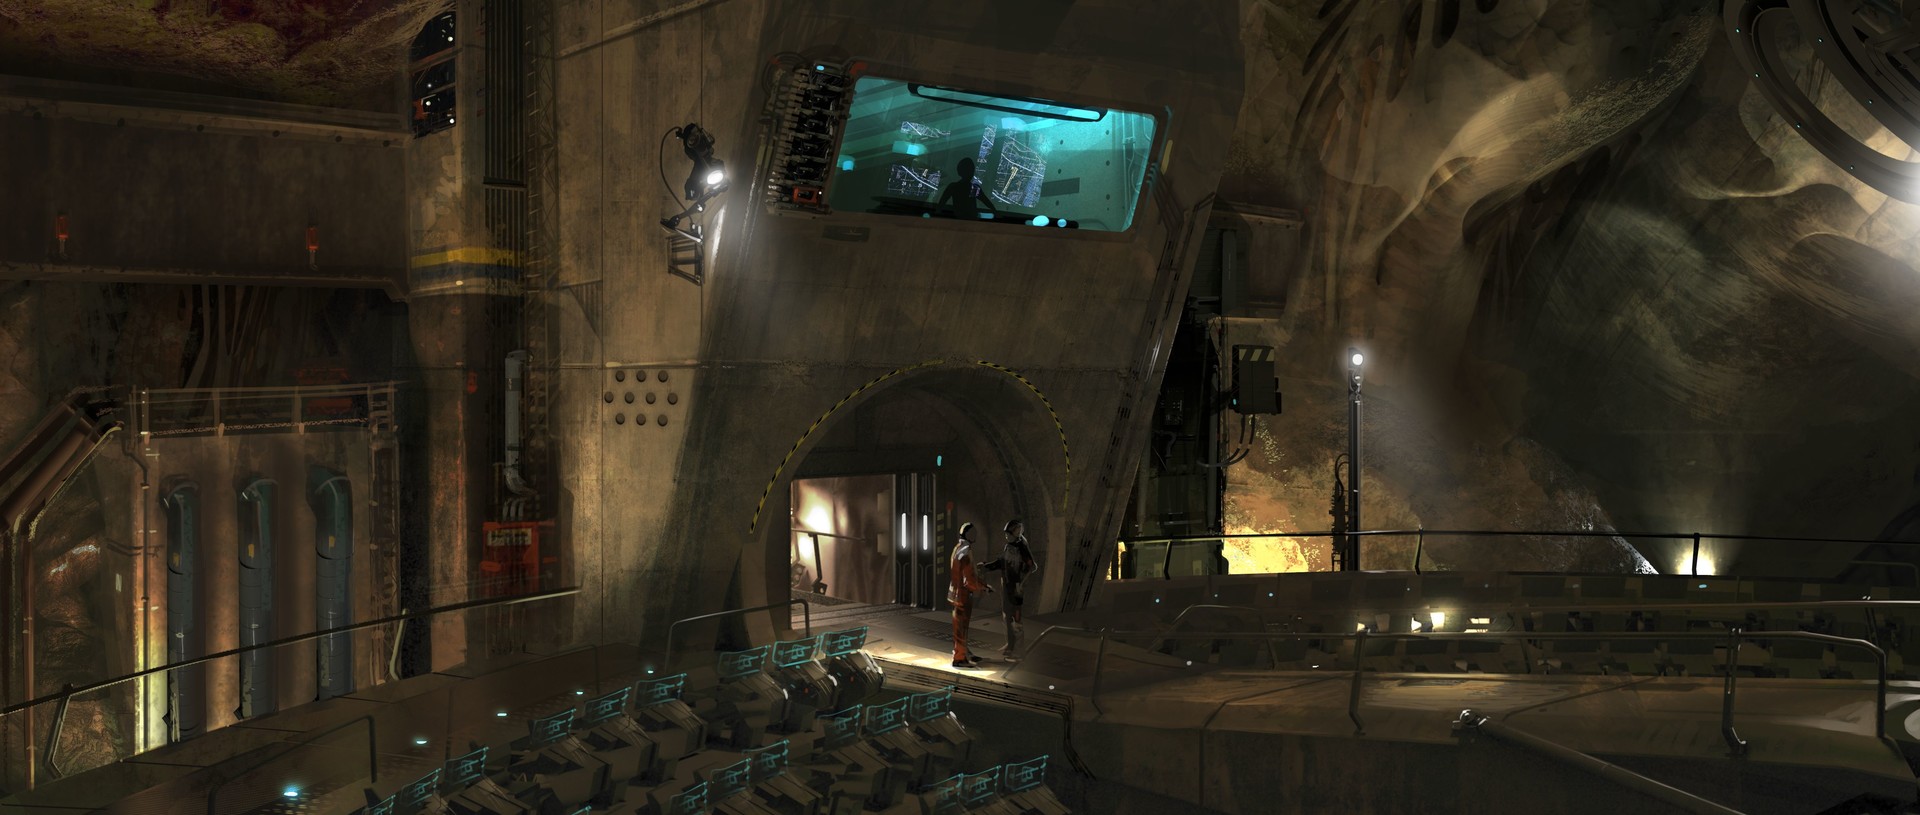 电影 Ender's Game 概念艺术作品-David Levy-14.jpg